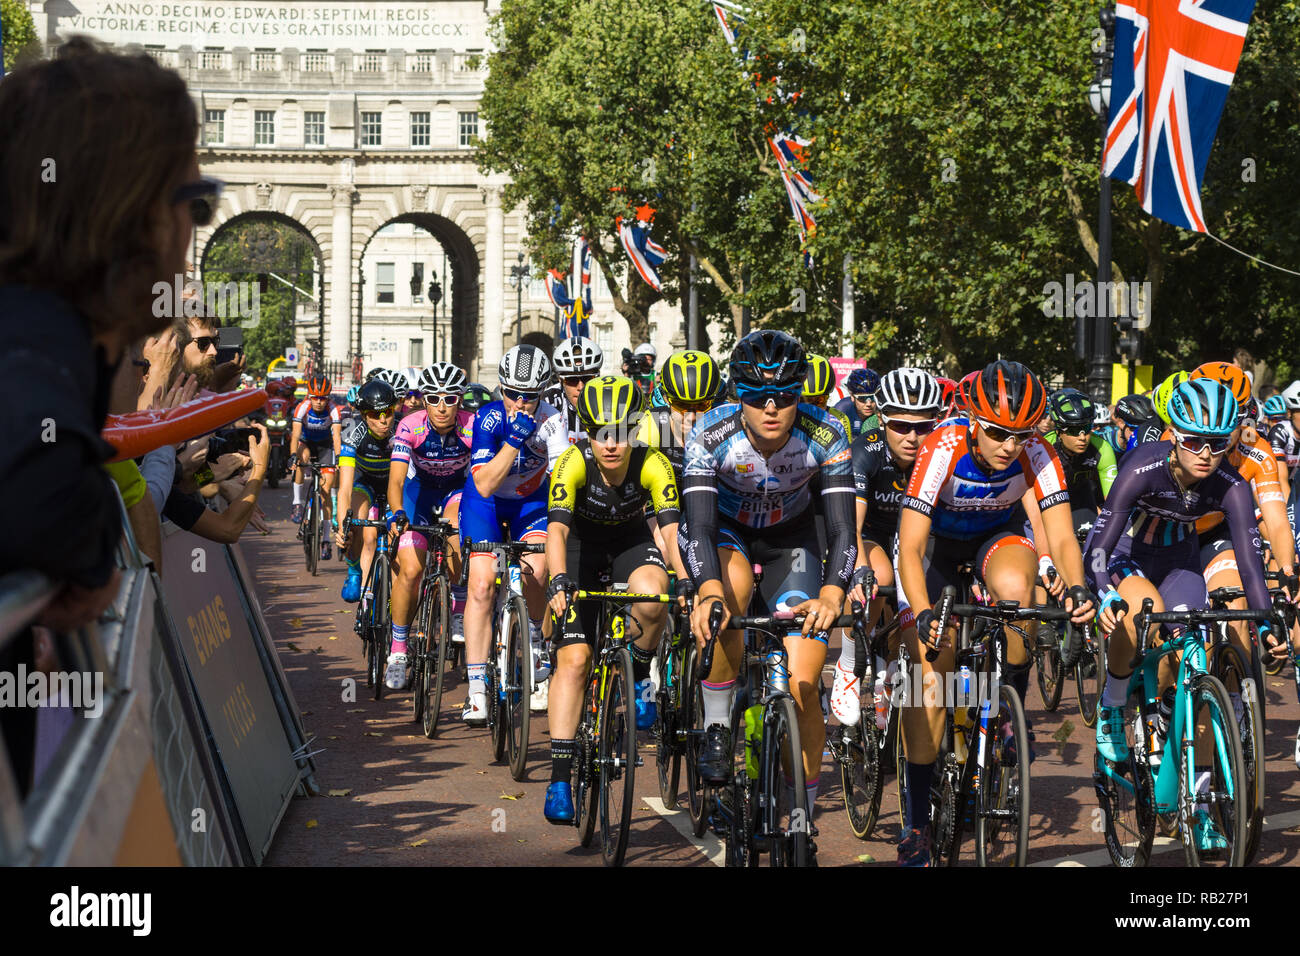 Radfahrer in der aufsichtsrechtlichen RideLondon 2018 Rennen Radfahren in der Mall vor dem Start des Rennens, London, UK Stockfoto